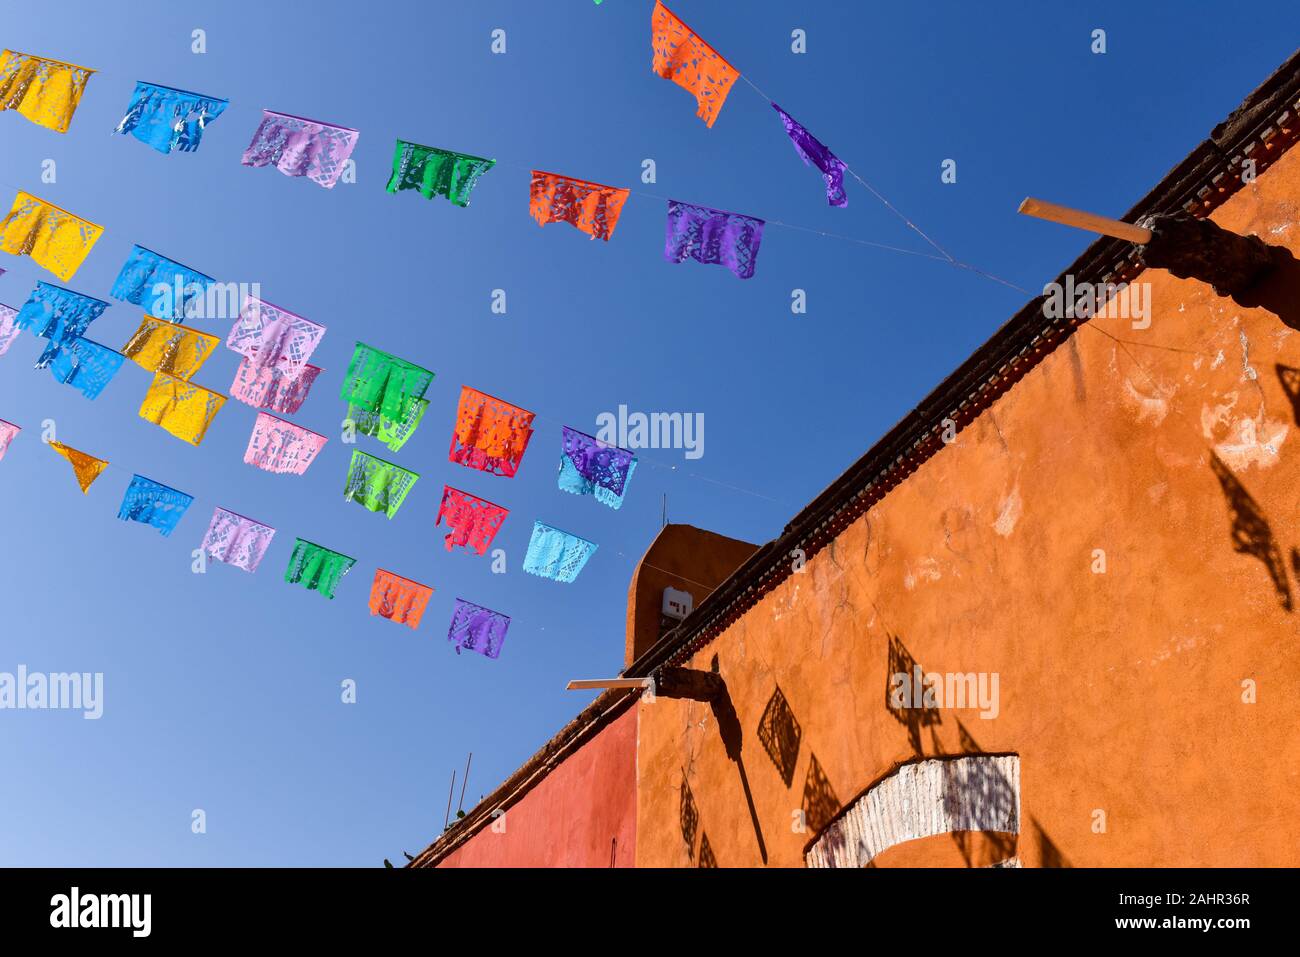 Papel Picado, messicana tipica carta festosa decorazioni in San Miguel De Allende, Messico Foto Stock